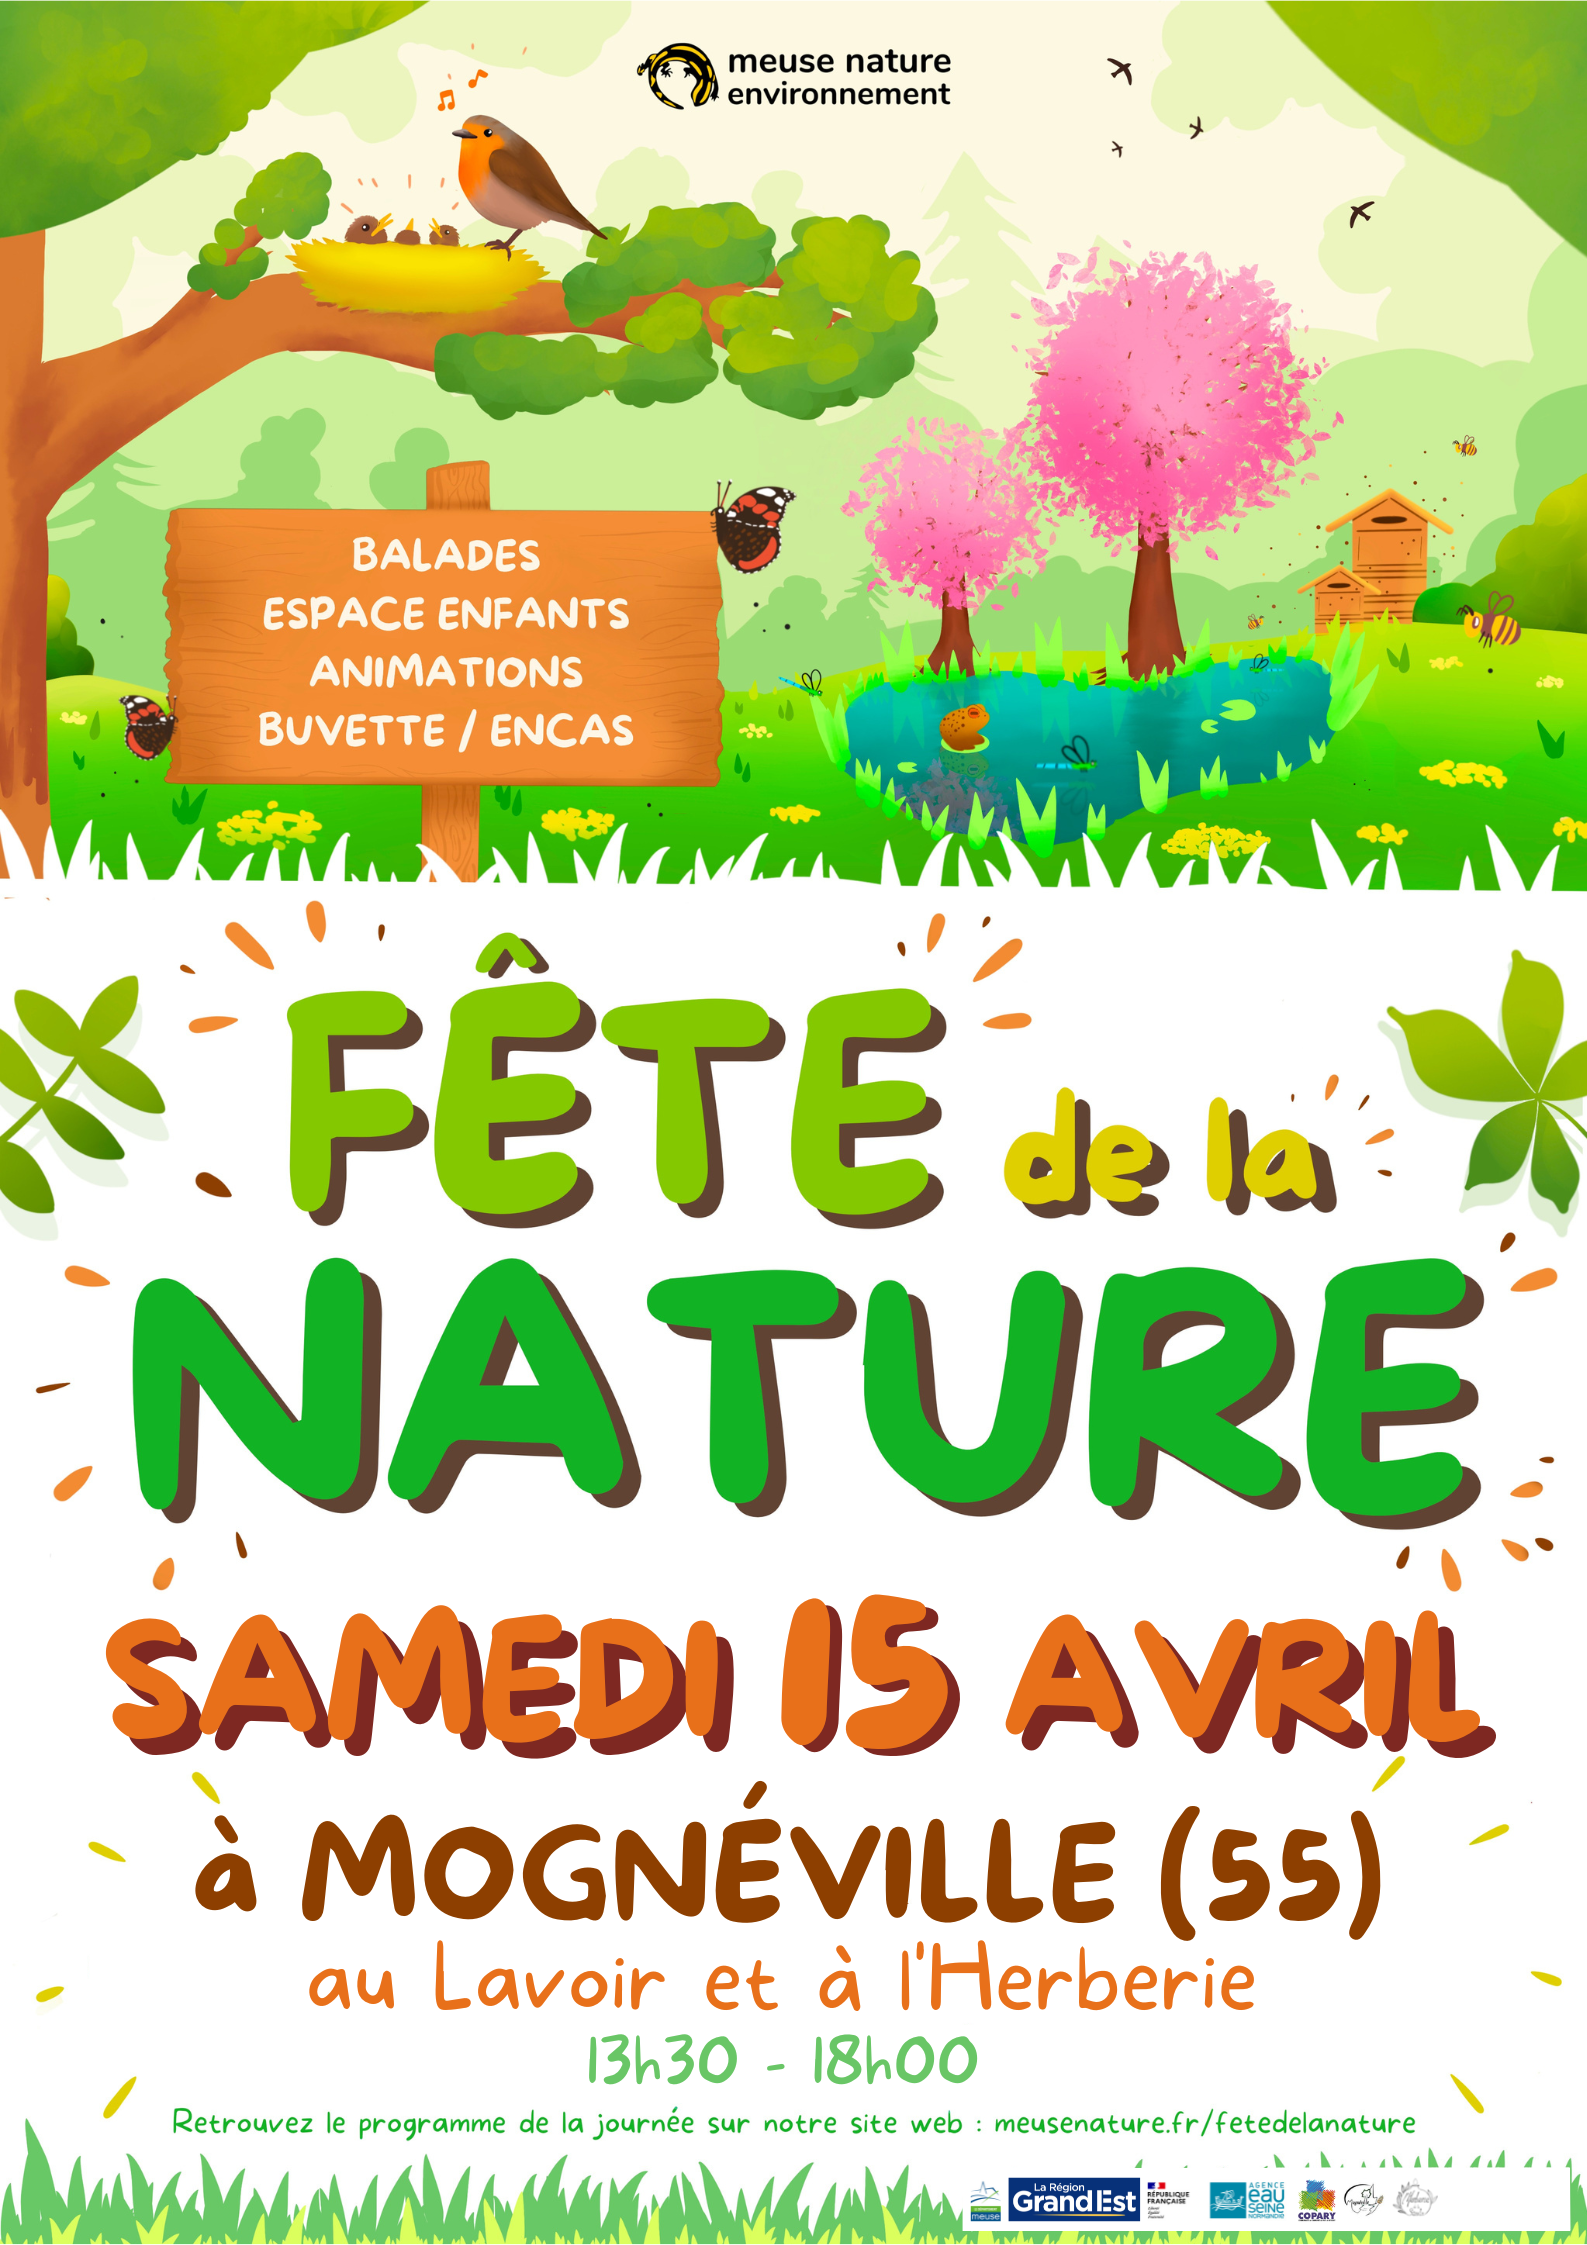 L’Assemblée générale, l’inauguration de MNE, la Fête de la Nature à Mognéville, réunies en une seule journée !